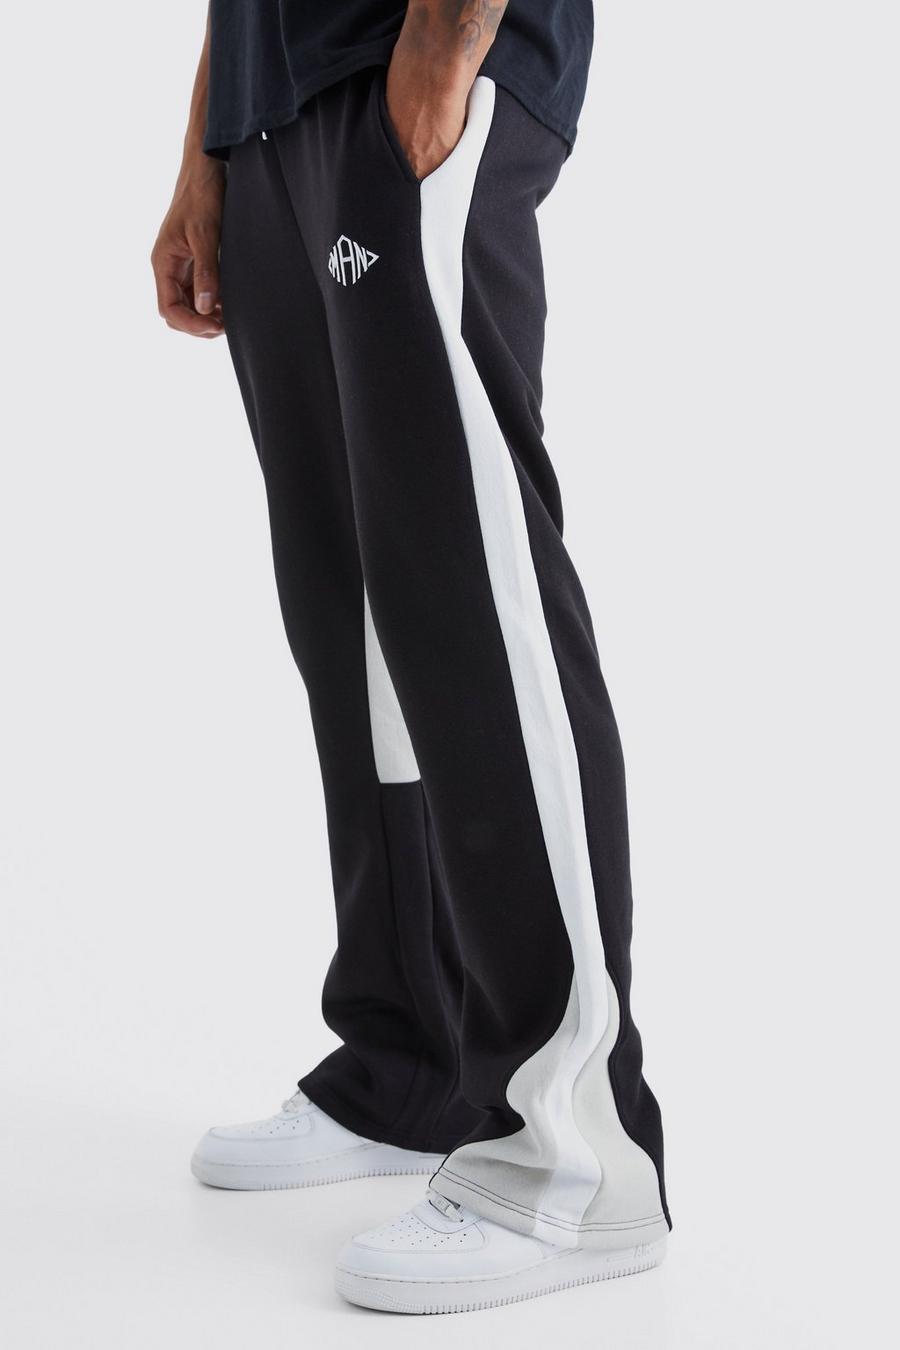 Pantalón deportivo Tall MAN con colores en bloque y refuerzos, Black